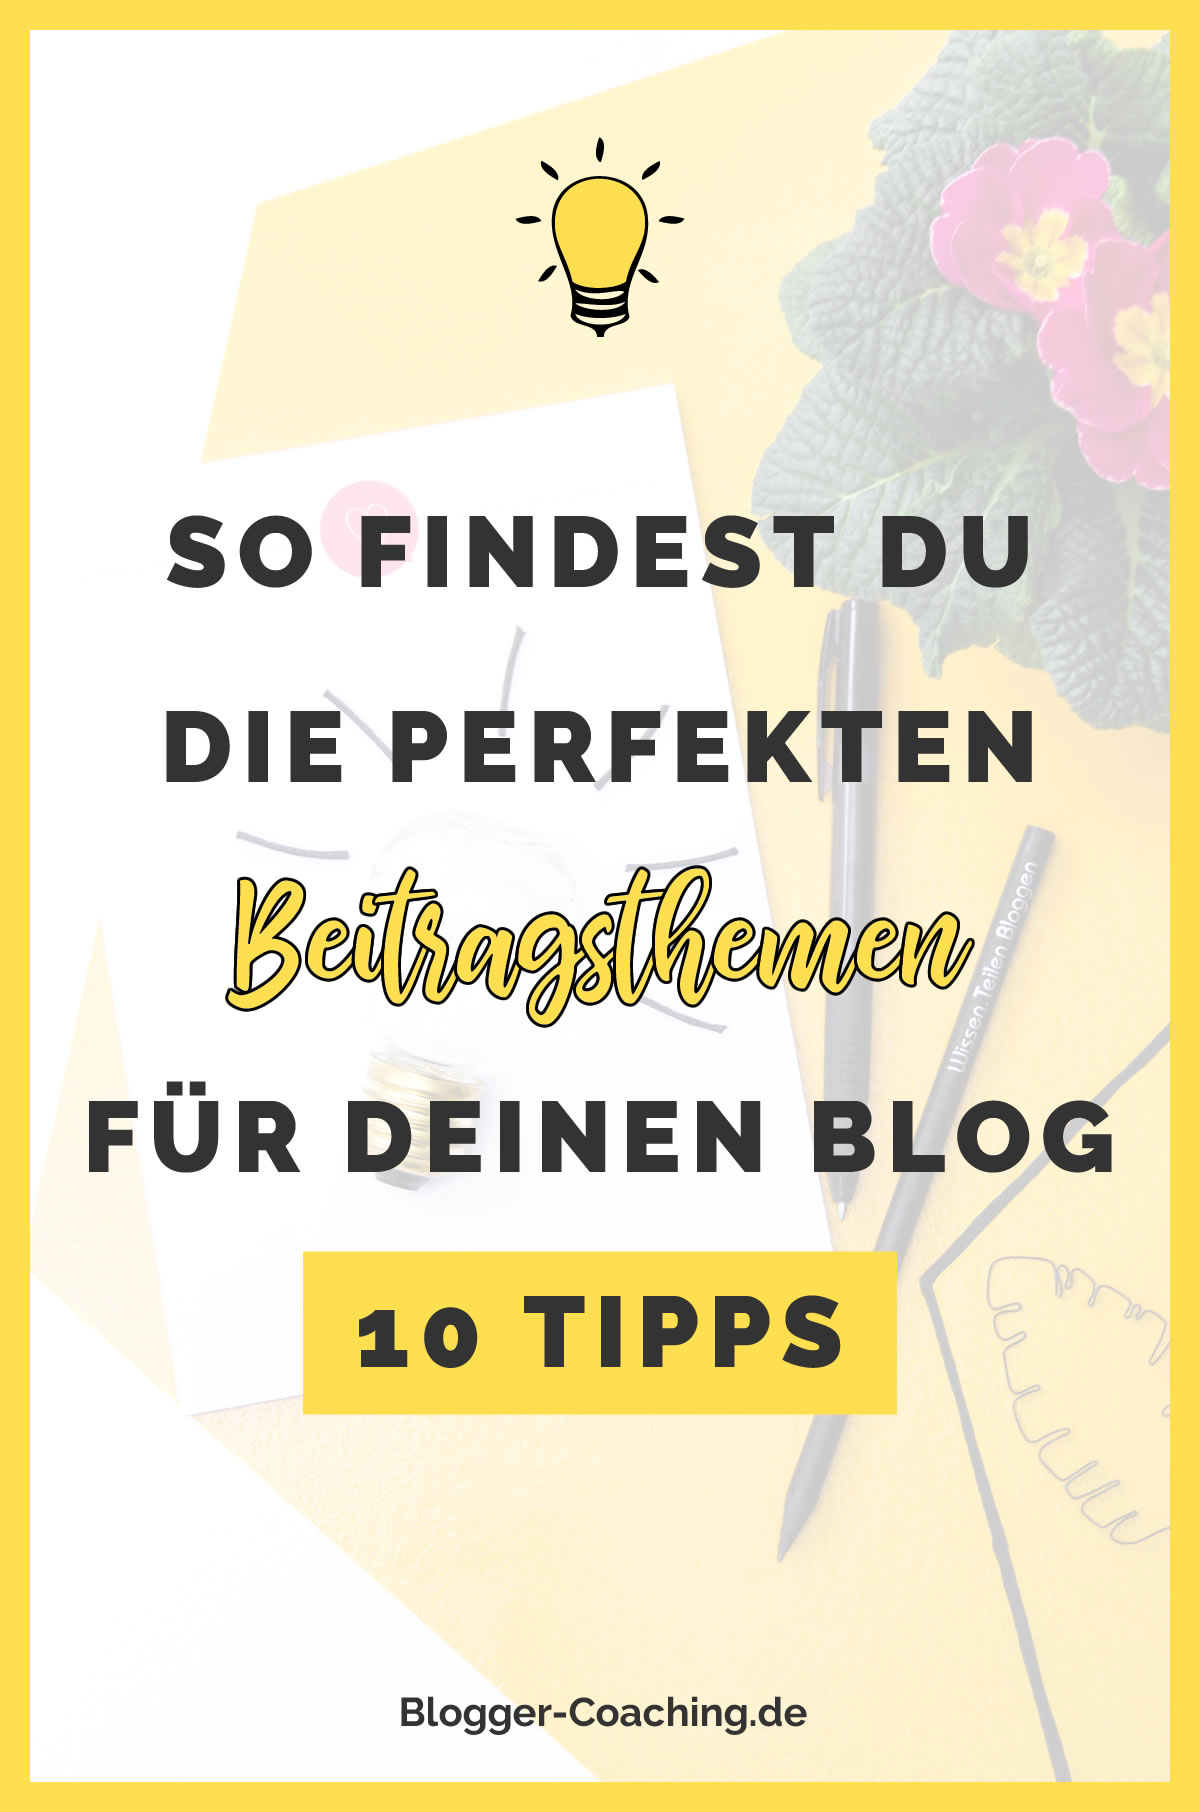 10 Wege, um die perfekten Beitragsthemen für deinen Blog zu finden | Blogger-Coaching.de - Dein Weg zum Blog-Erfolg #blogger #erfolg